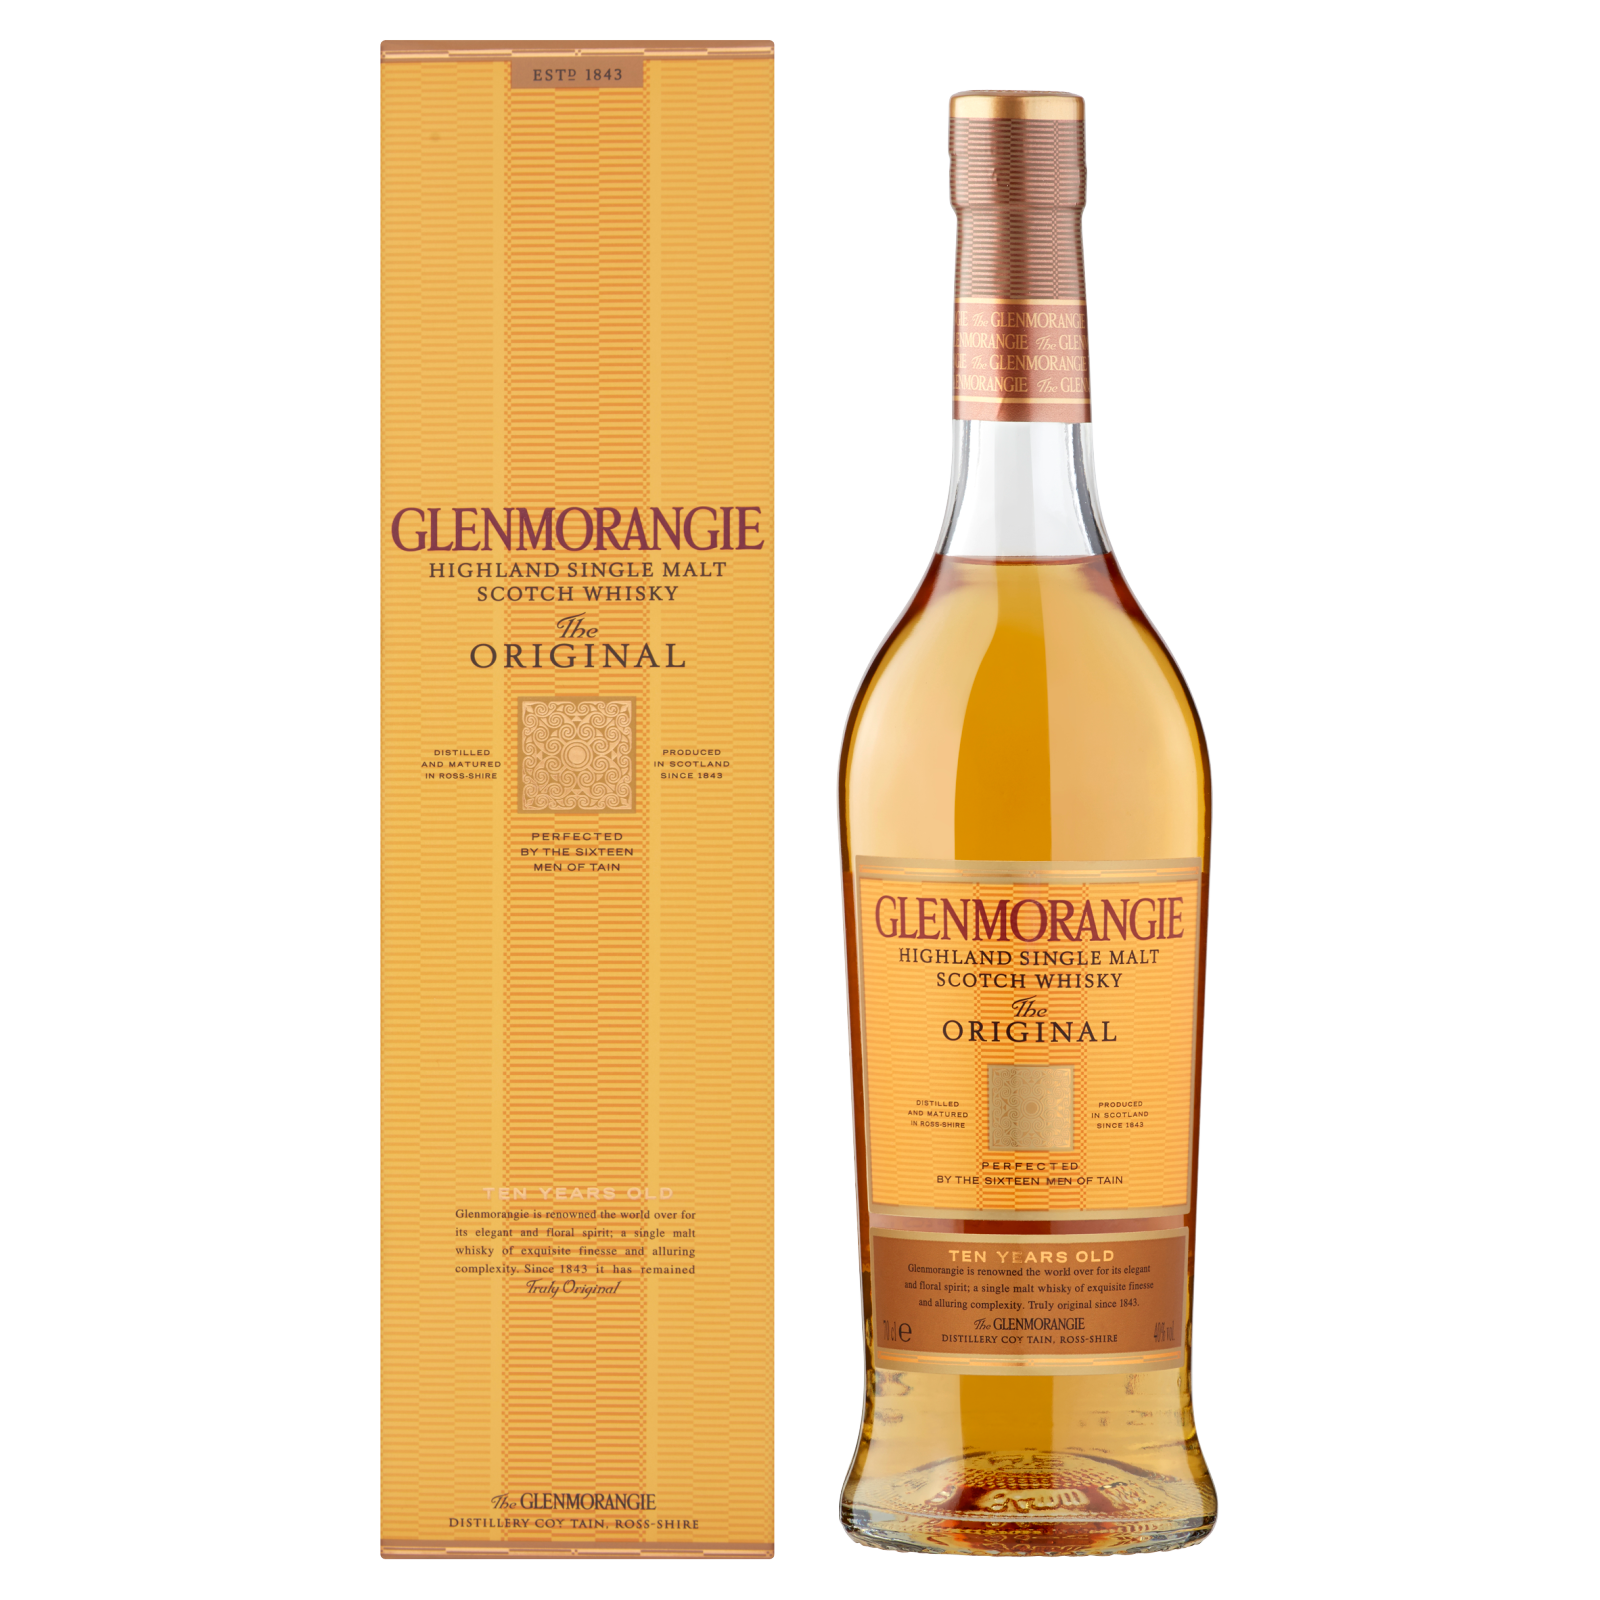 Glenmorangie Original Highlands Scotch Whisky, 70cl